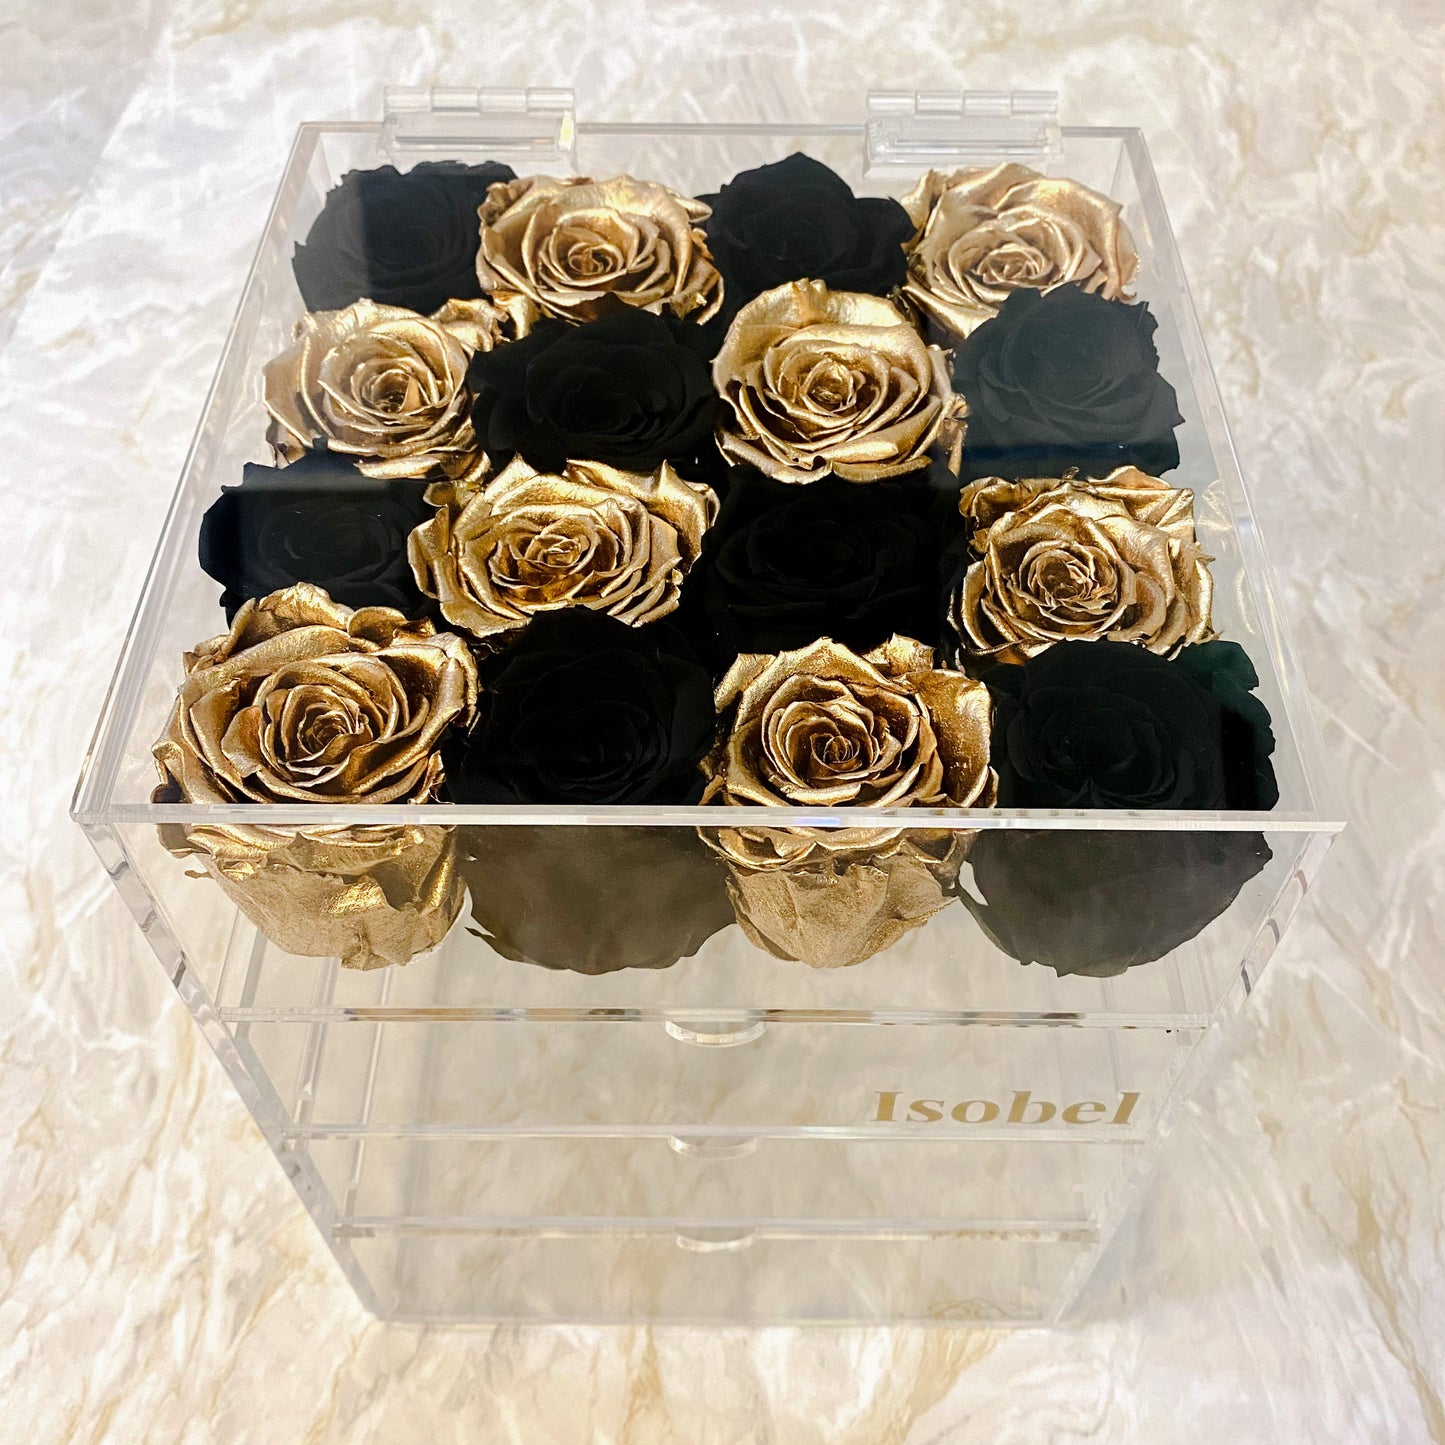 Infinity Rose Makeup Organiser - Black Infinity Roses - Gold One Year Roses - Rose Makeup Box